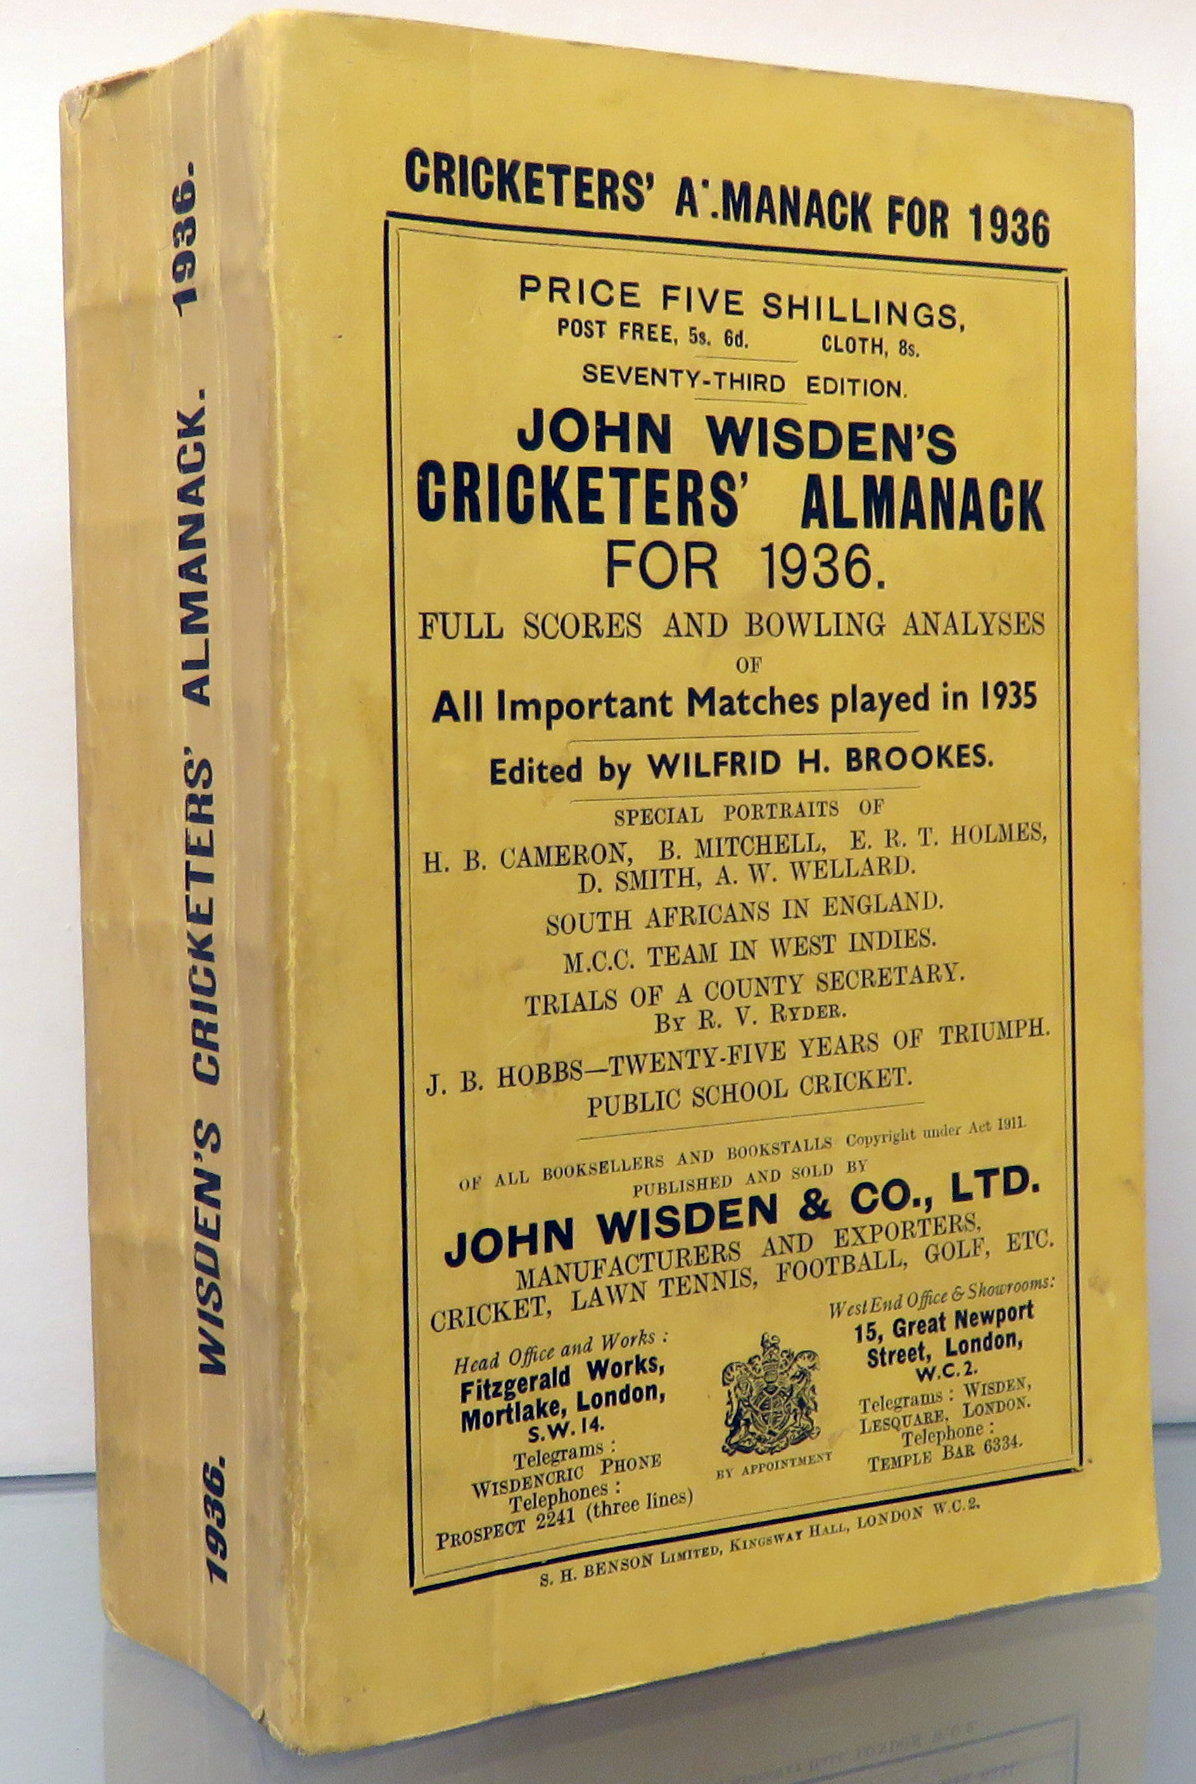 John Wisden's Cricketers' Almanack For 1936